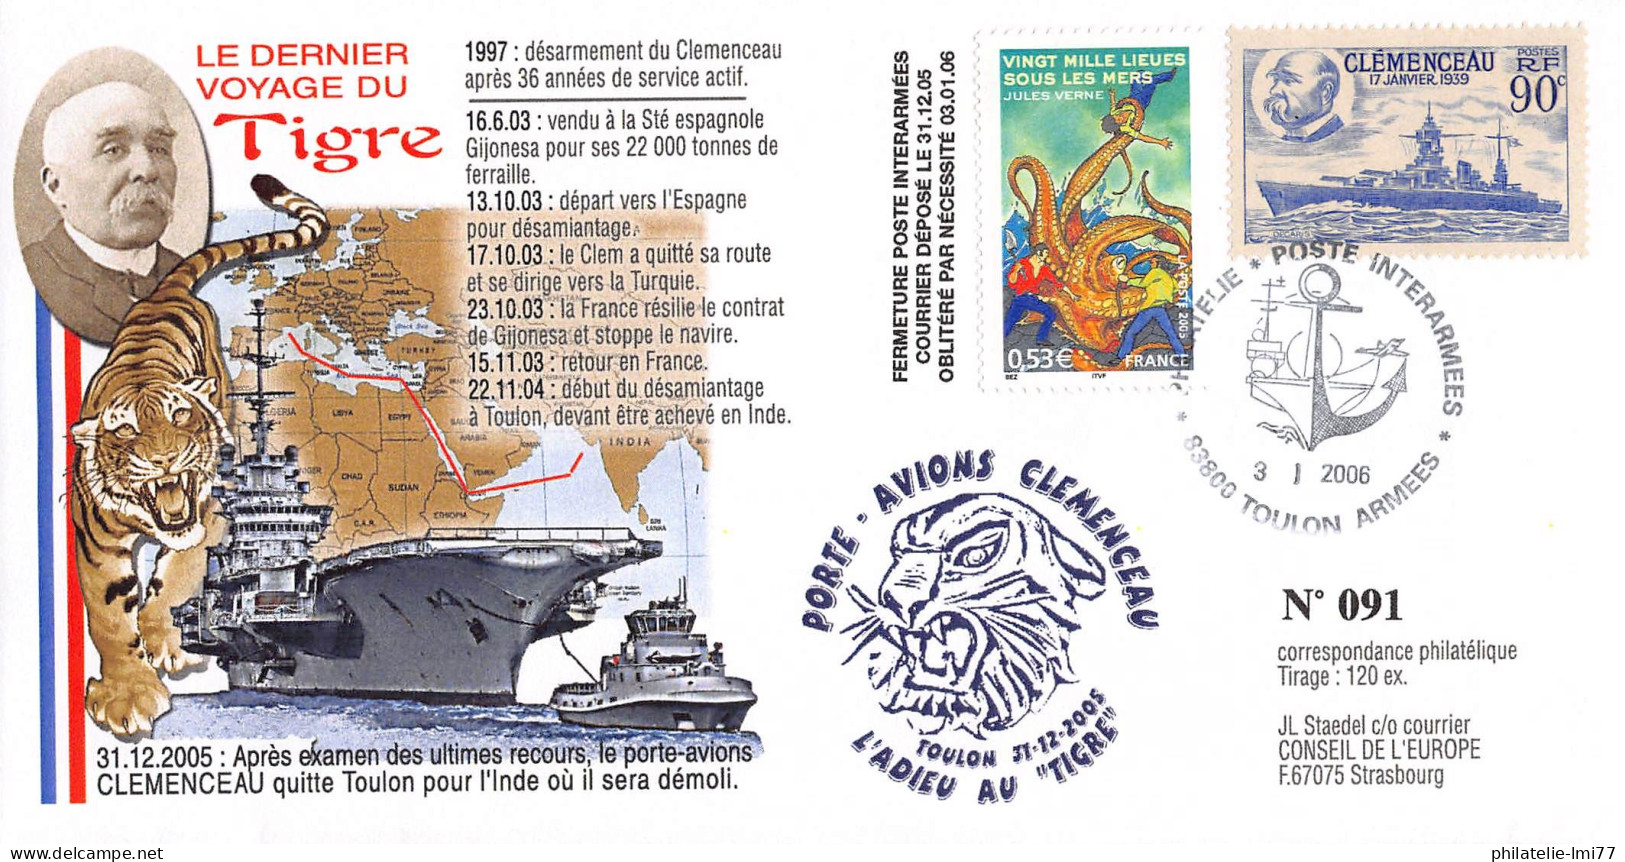 CLEM 05-1 TYPE1 - DÉPART DU CLEMENCEAU EN INDE - Maritime